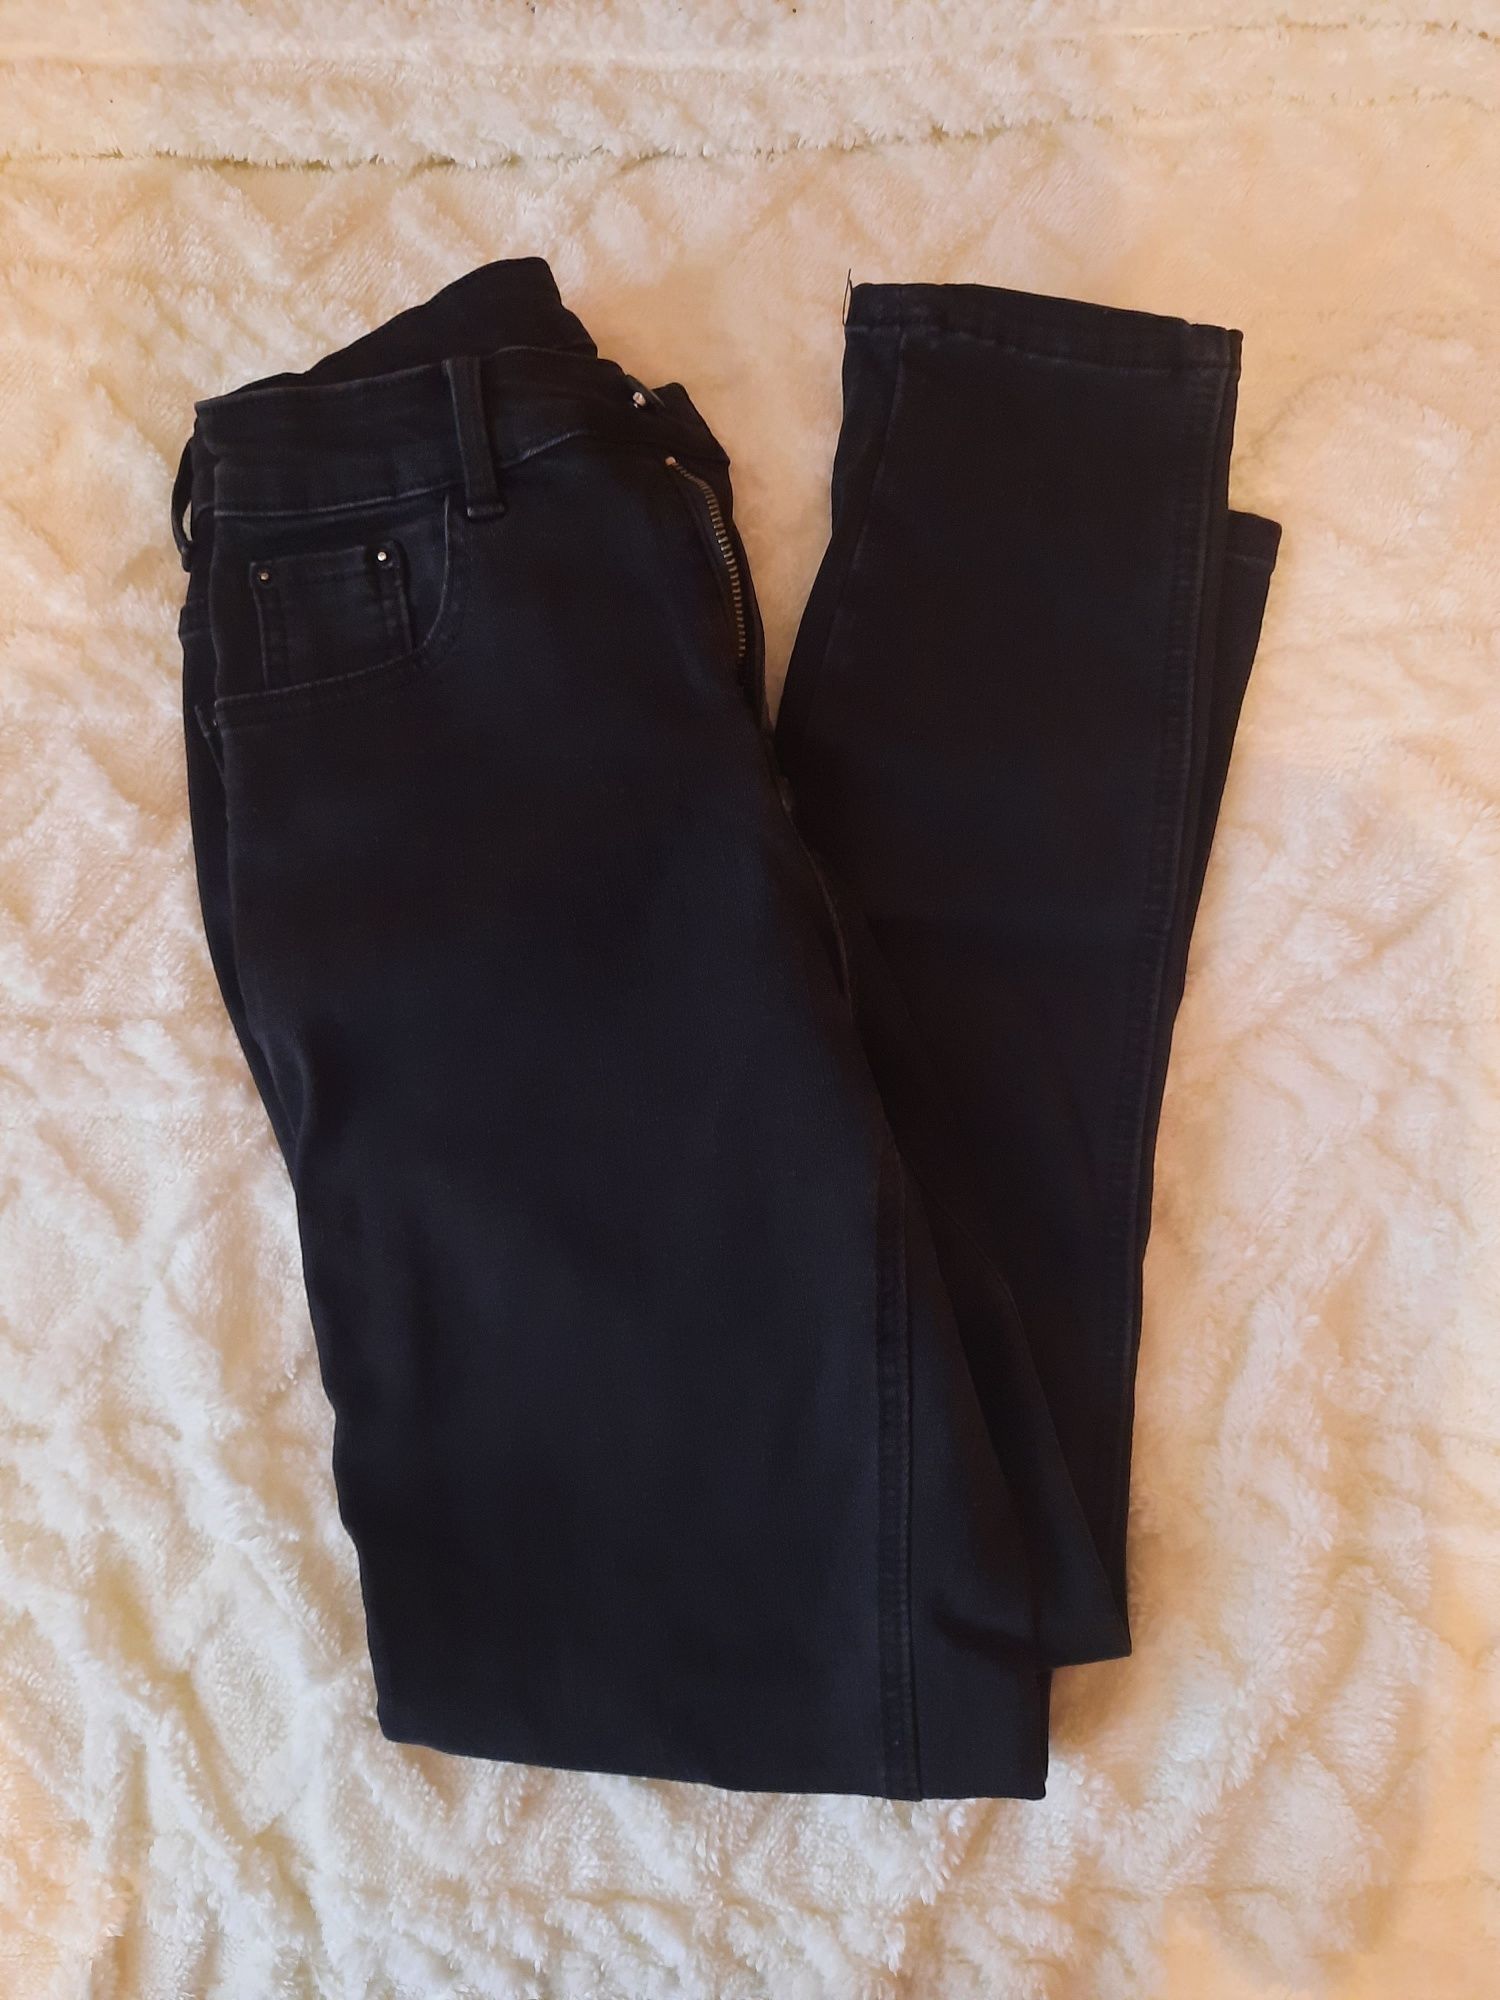 черные джинсы с флиссом внутри (женские)